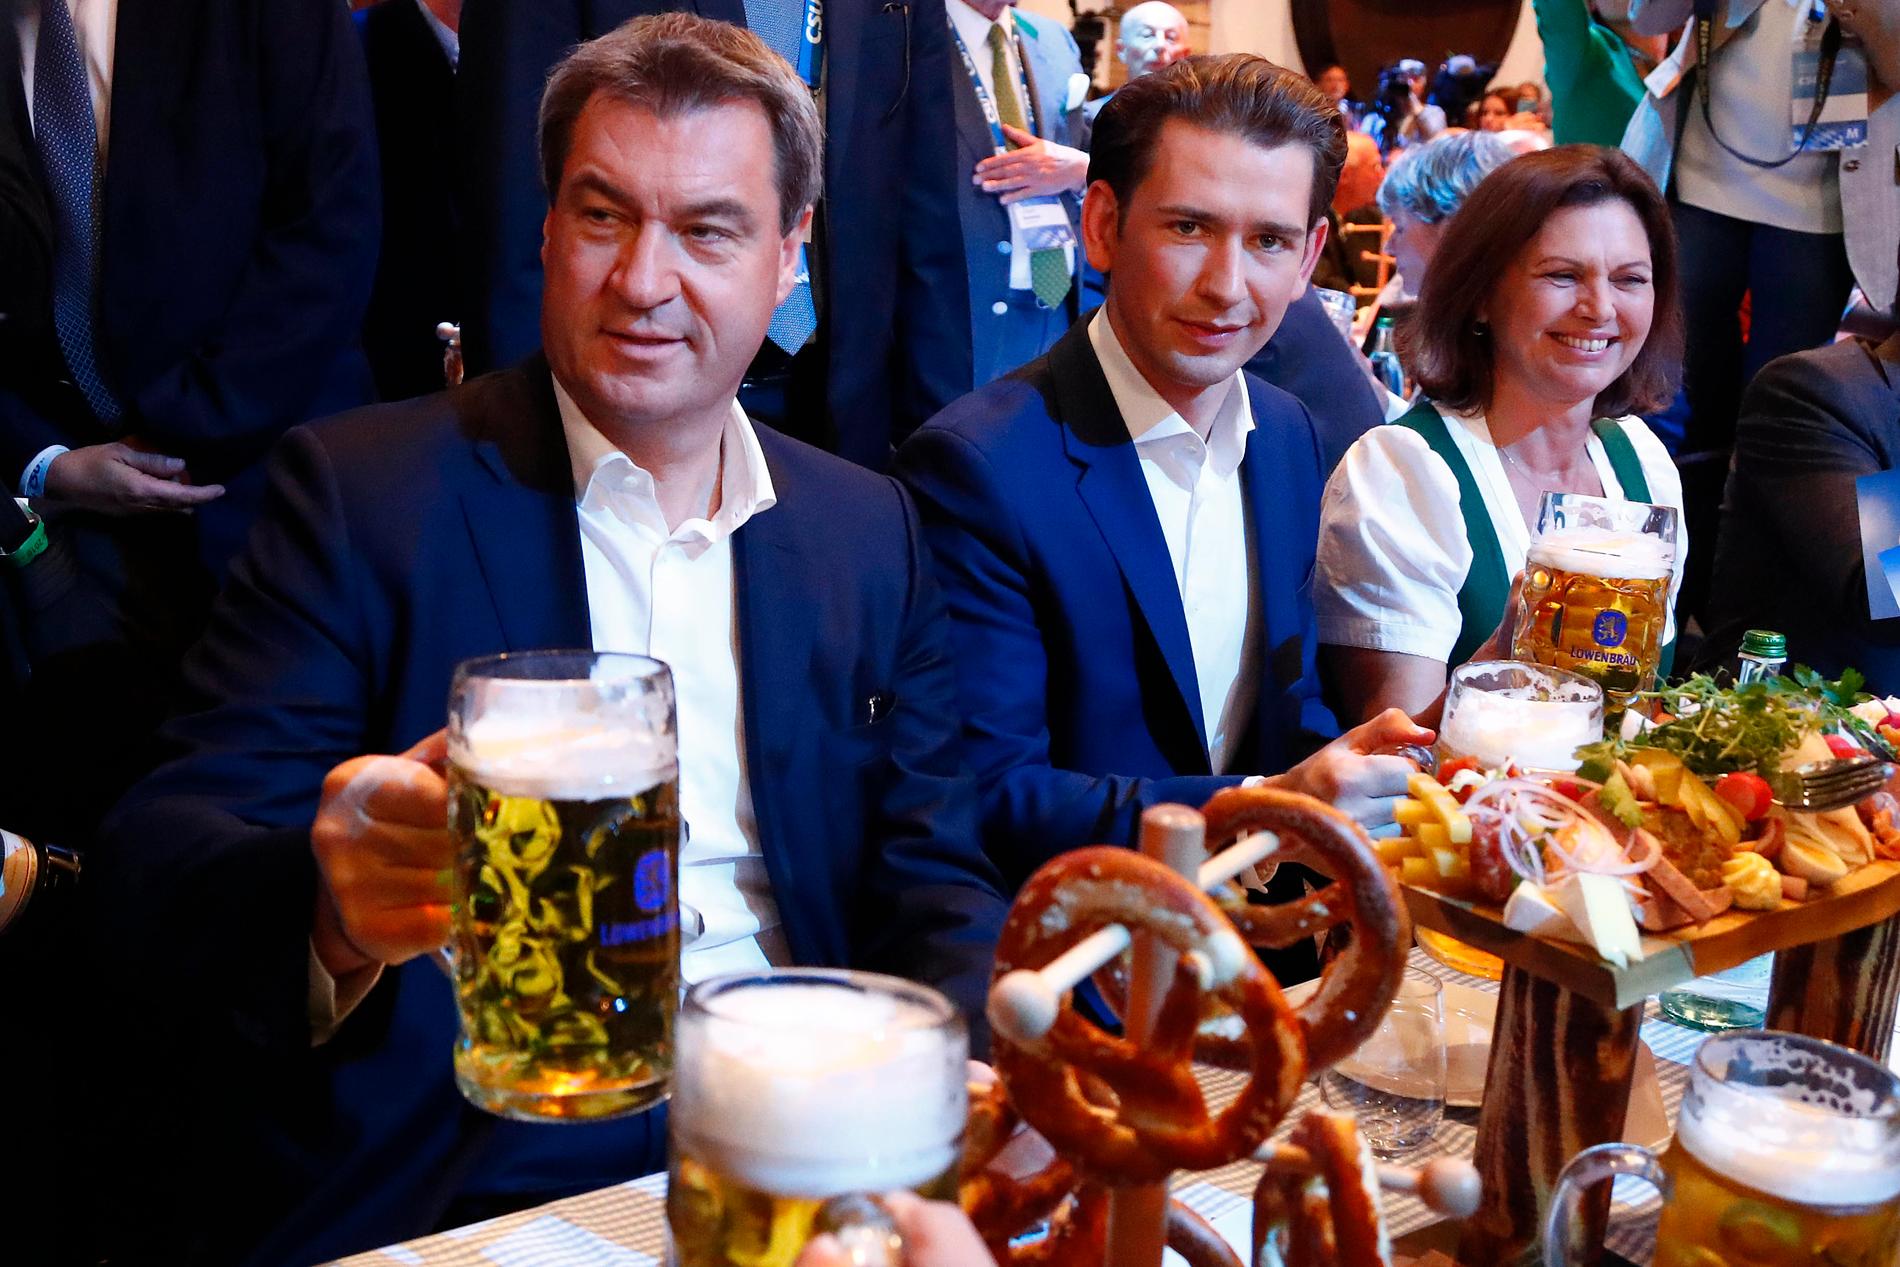 Bayerns regeringschef Markus Söder (till vänster) tar en öl tillsammans med Österrikes förbundskansler Sebastian Kurz (i mitten) inför valslutspurten i München i fredags.